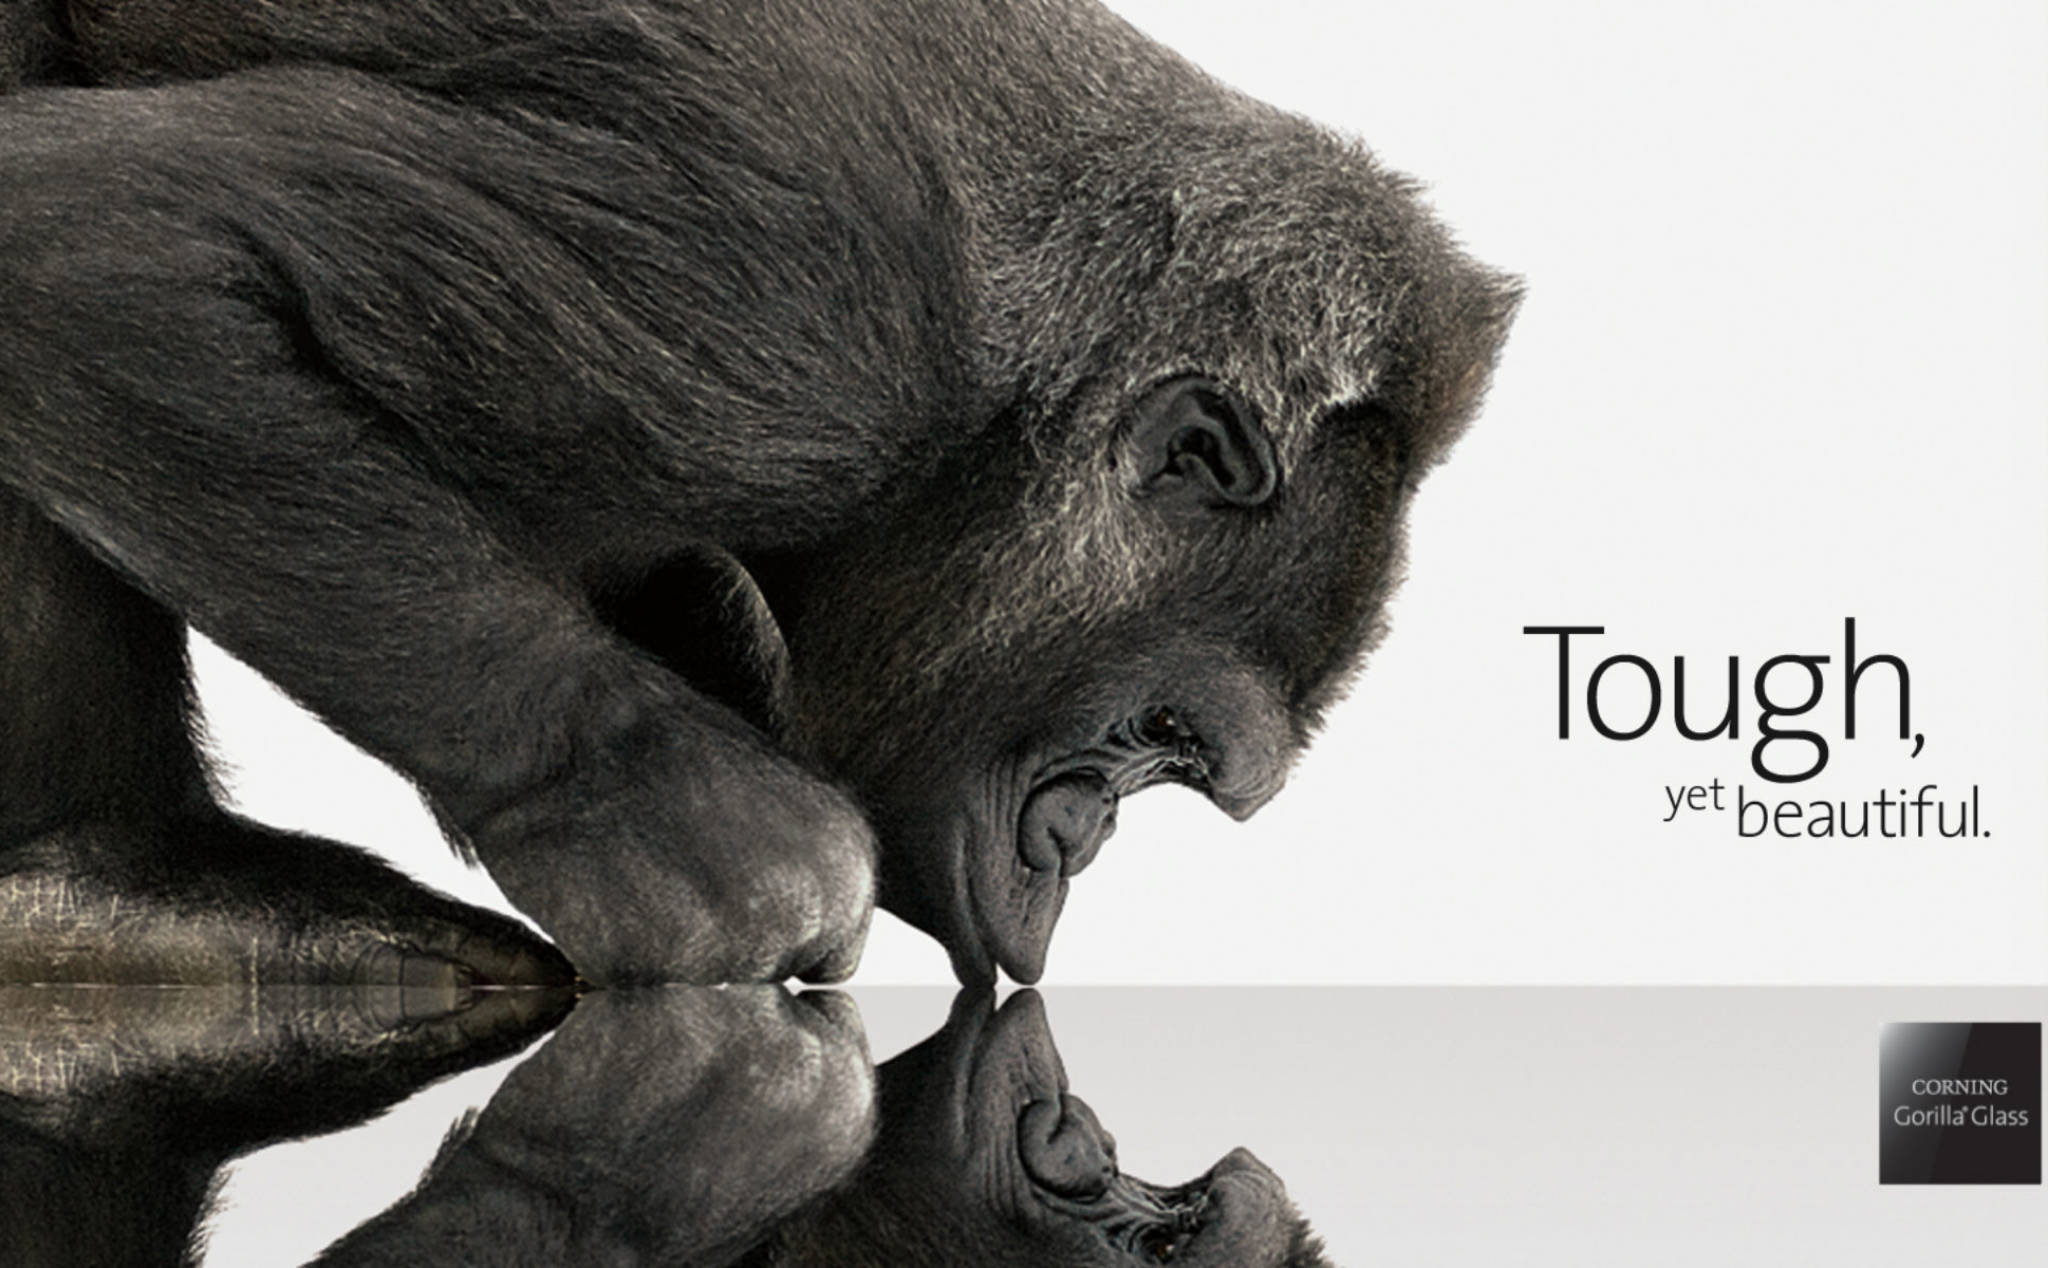 Kính Gorilla Glass đã trở thành tiêu chuẩn trên smartphone hiện đại như thế nào?